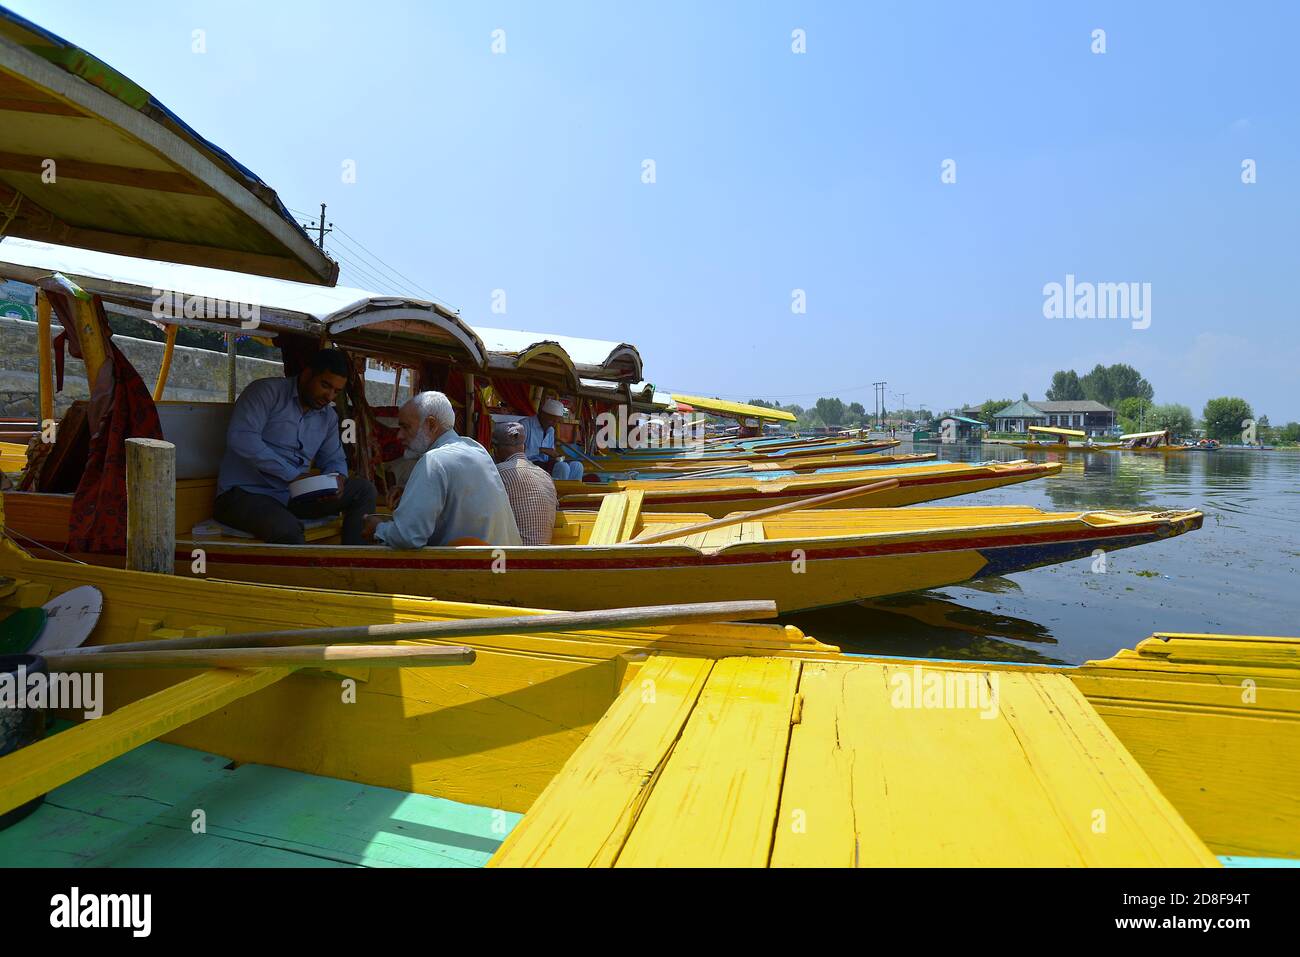 Long flat-bottomed wooden boats, shikaras, on the Dal Lake in Srinagar, Kashmir Stock Photo